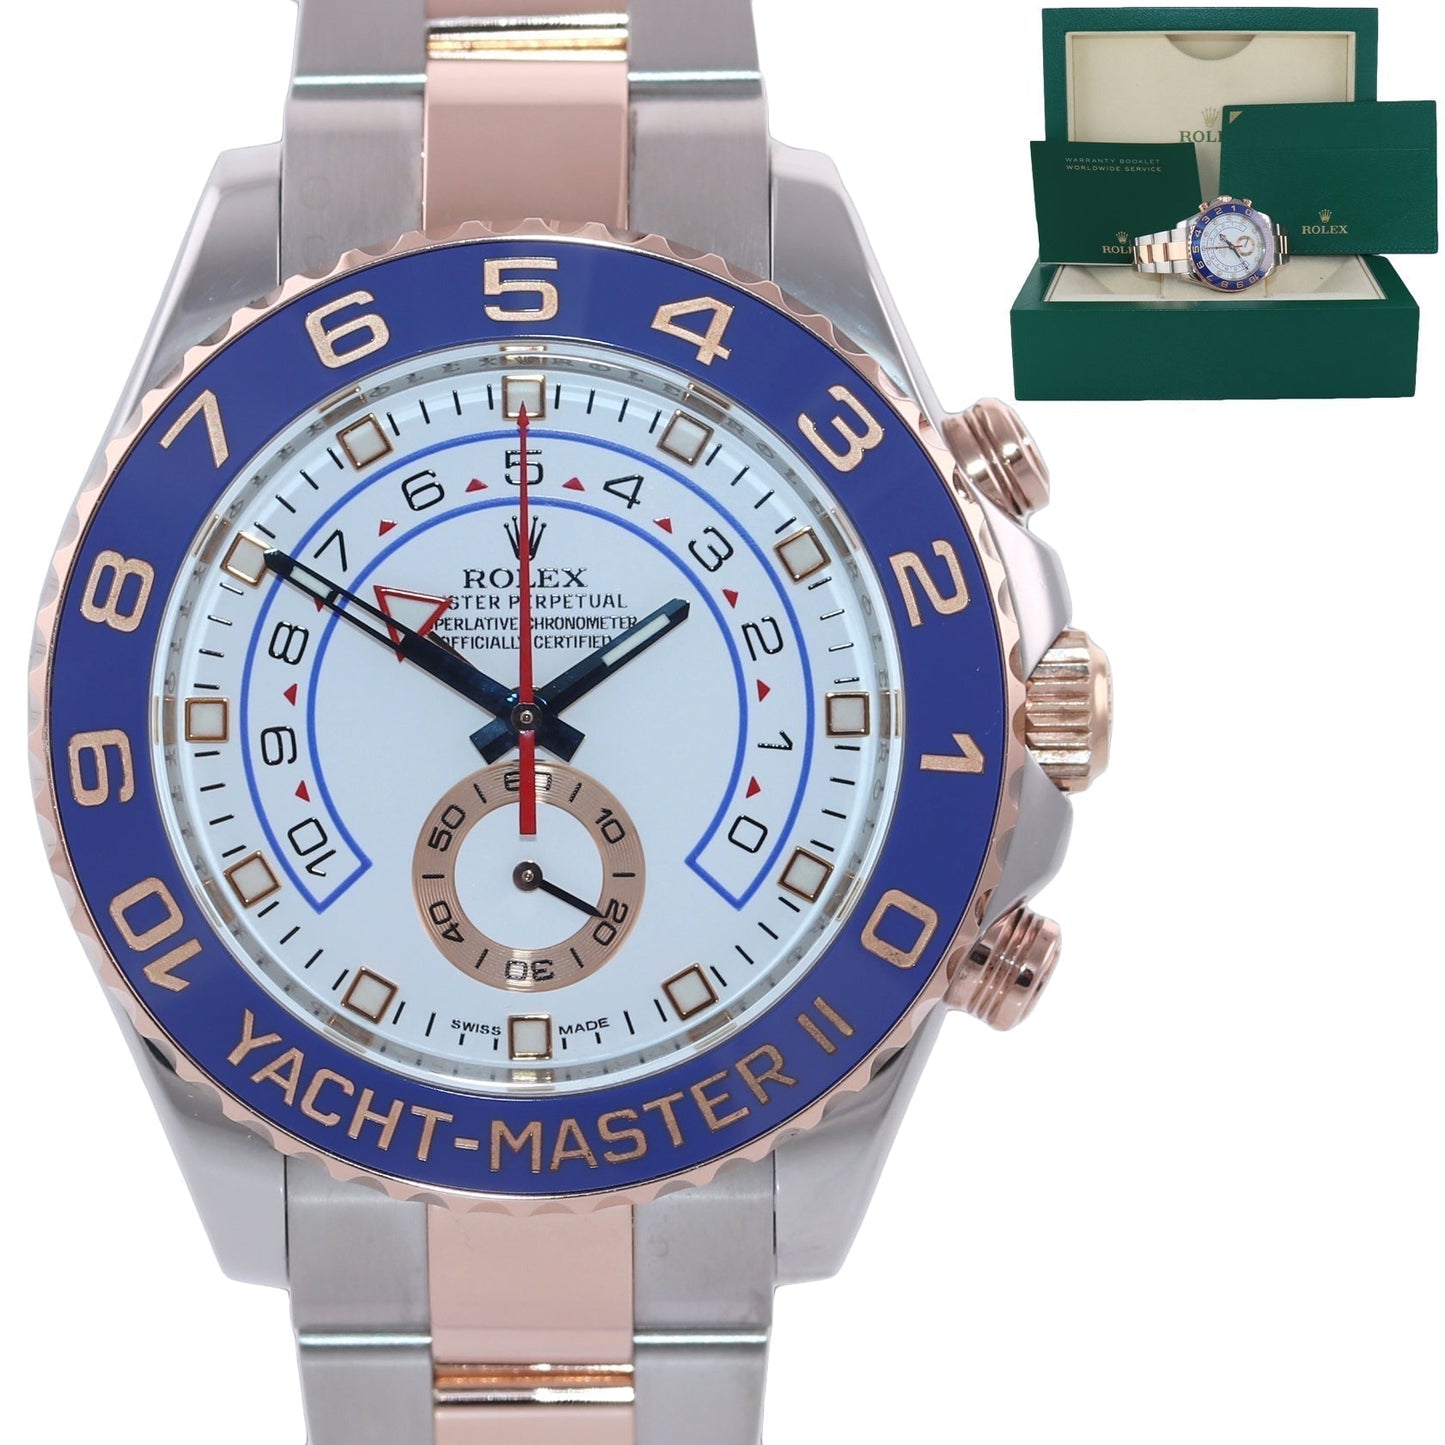 MINT 2017 Rolex Yacht-Master II 116681 Steel Everose Gold Blue hands 44mm Watch Box